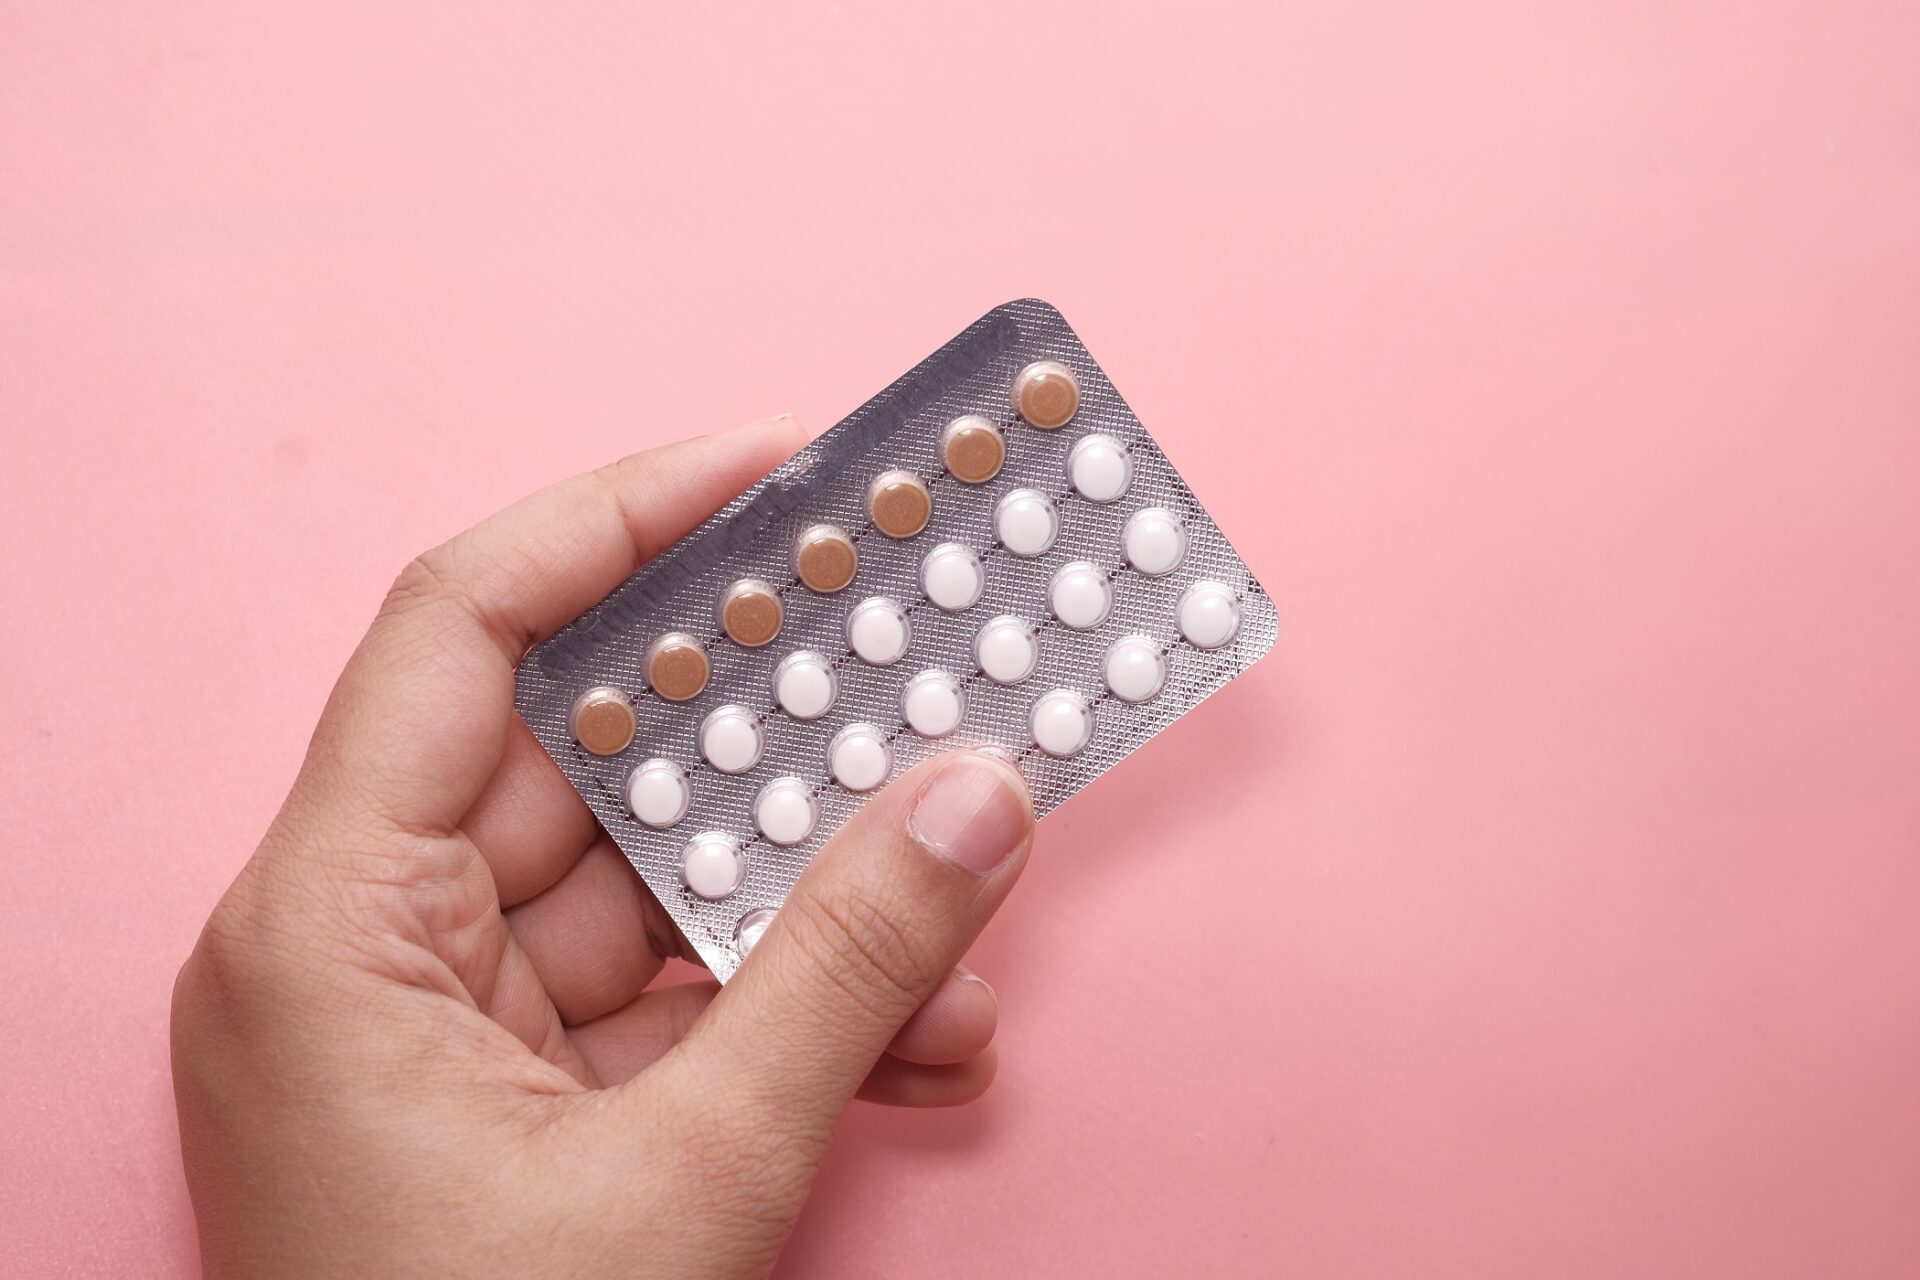 Male Contraceptive Pill Found 99% Effective in Preventing Pregnancy